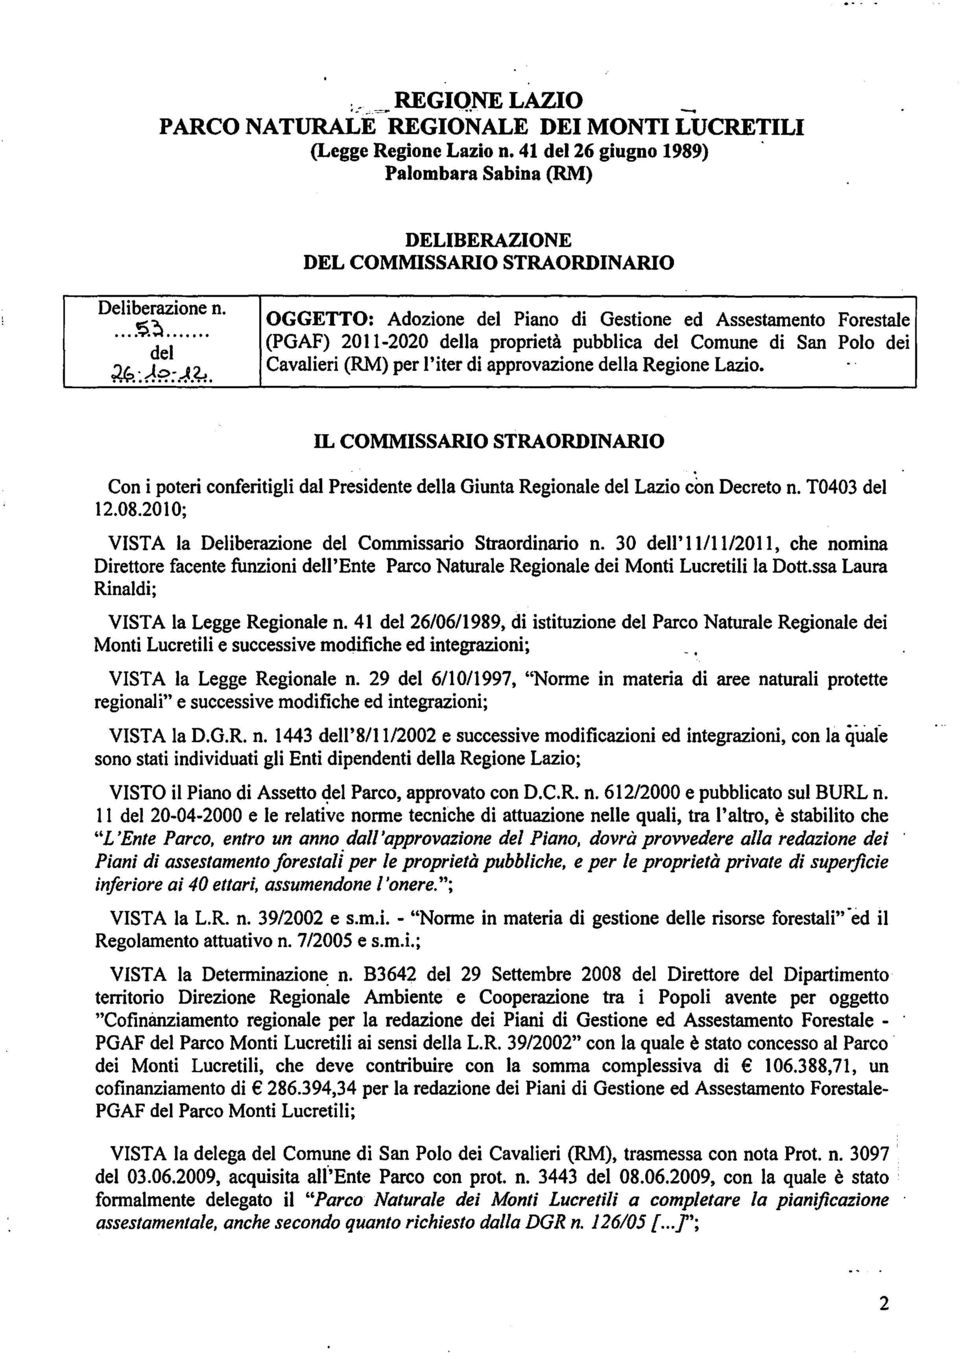 ~.... del ~:A?;.~.~. OGGETTO: Adozione del Piano di Gestione ed Assestamento Forestale (PGAF) 2011-2020 della proprietà pubblica del Comune di San Polo dei Cavalieri (RM) per l'iter di approvazione della Regione Lazio.